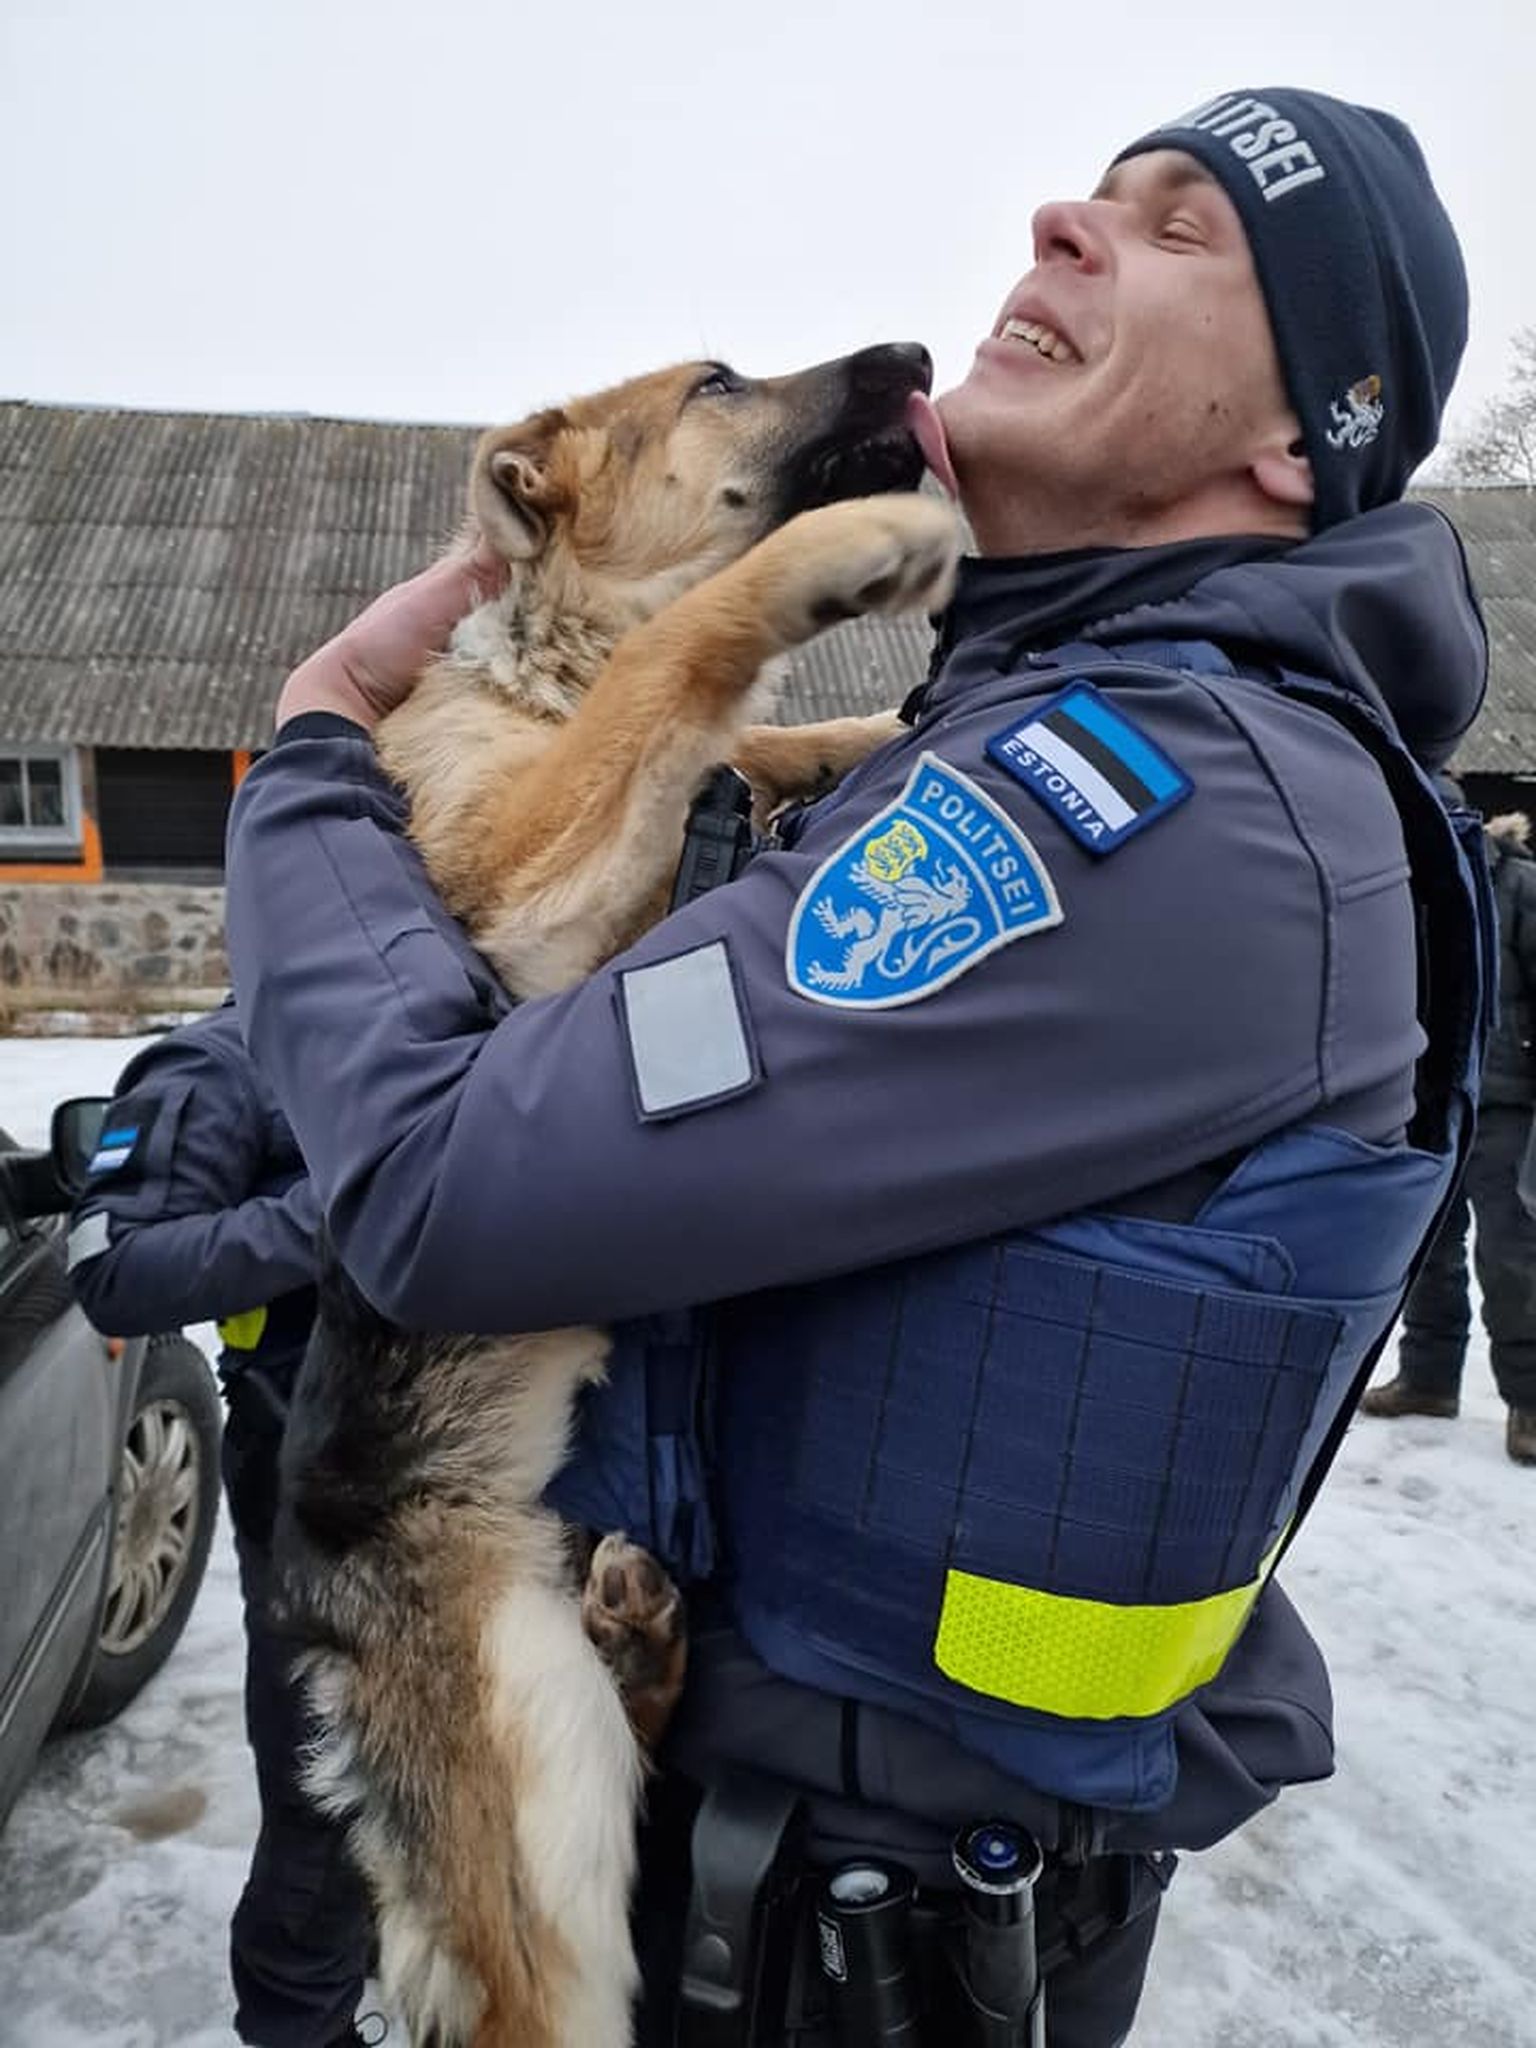 Прибывший на вызов патрульный полицейский решил забрать себе щенка немецкой овчарки, который жил в ужасных условиях.